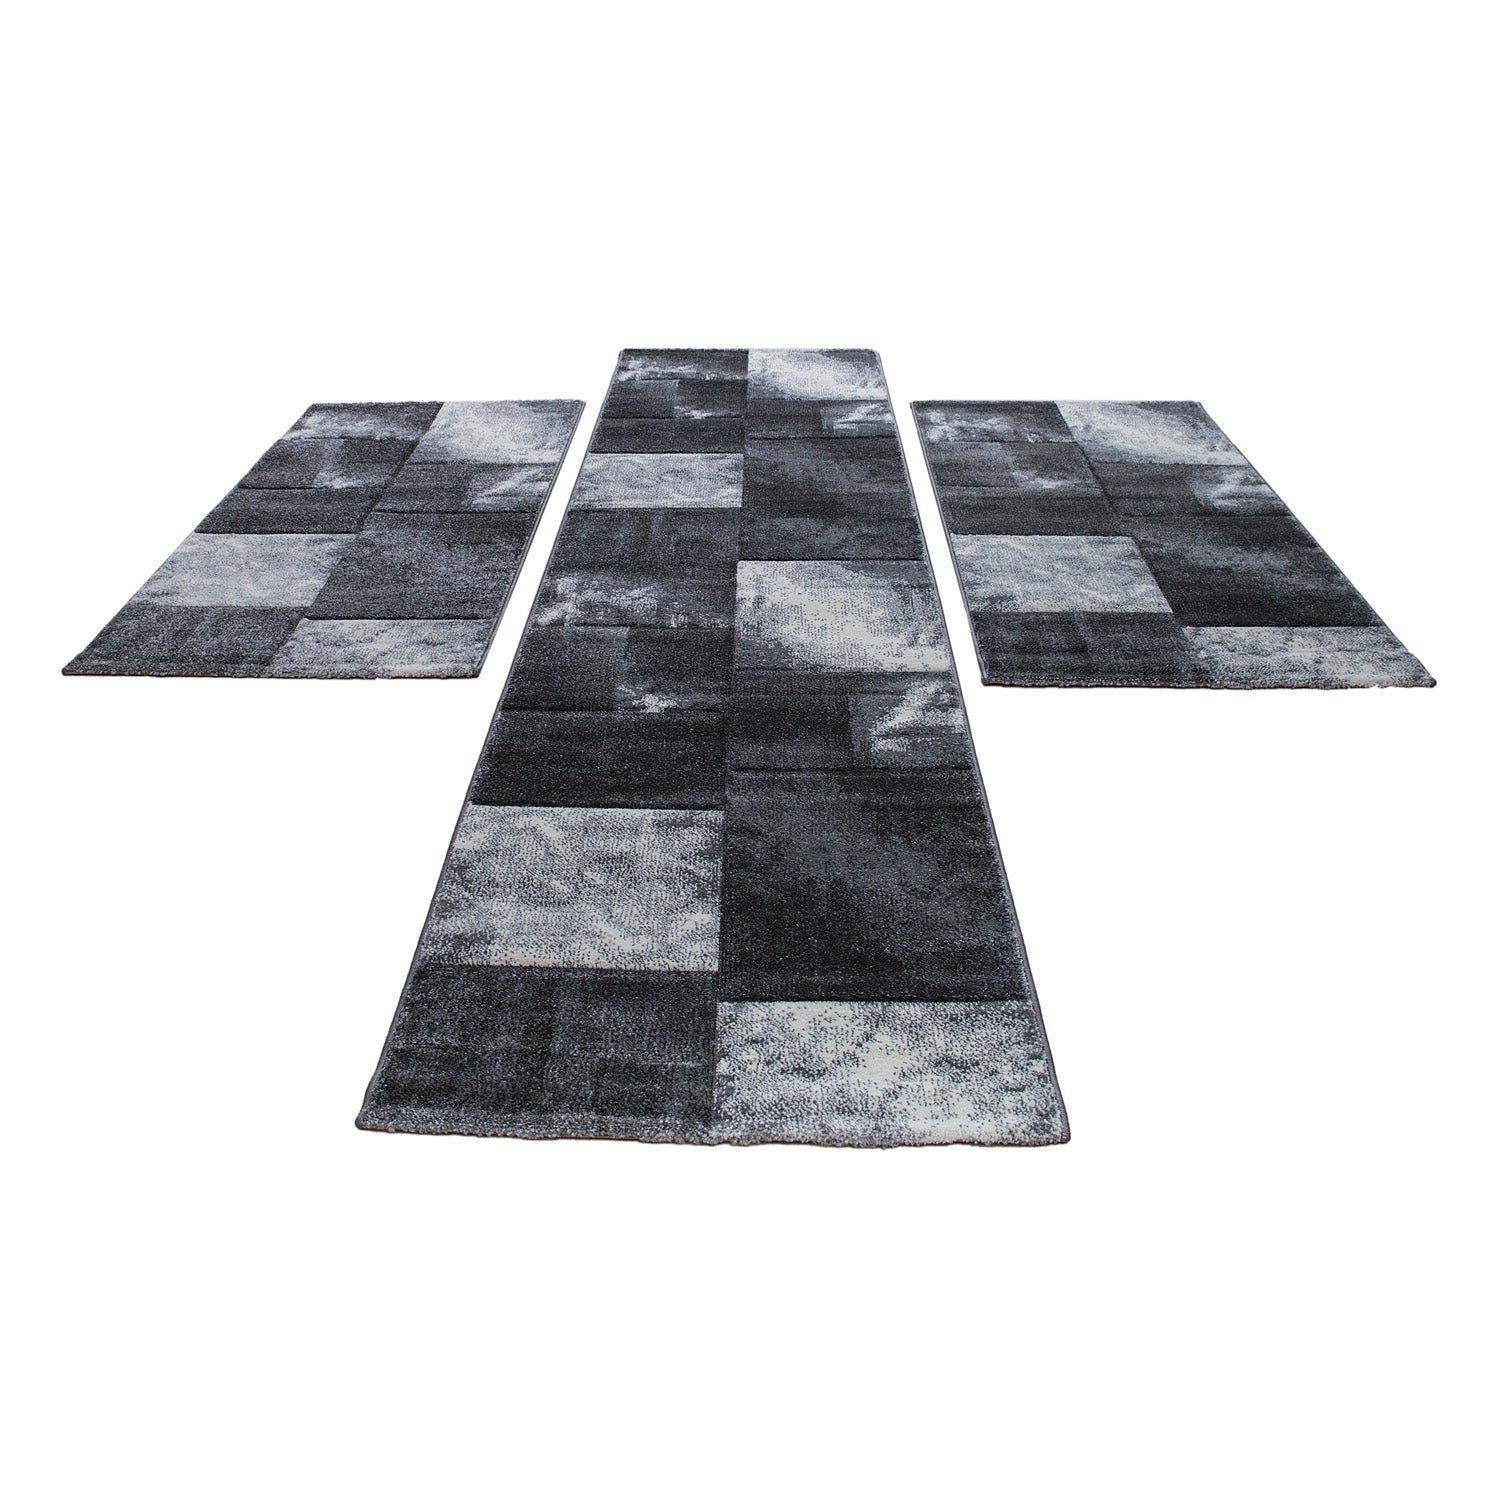 Kurzflor Teppich Bettumrandung Läufer Kacheldesign Grau Meliert 3 Teile